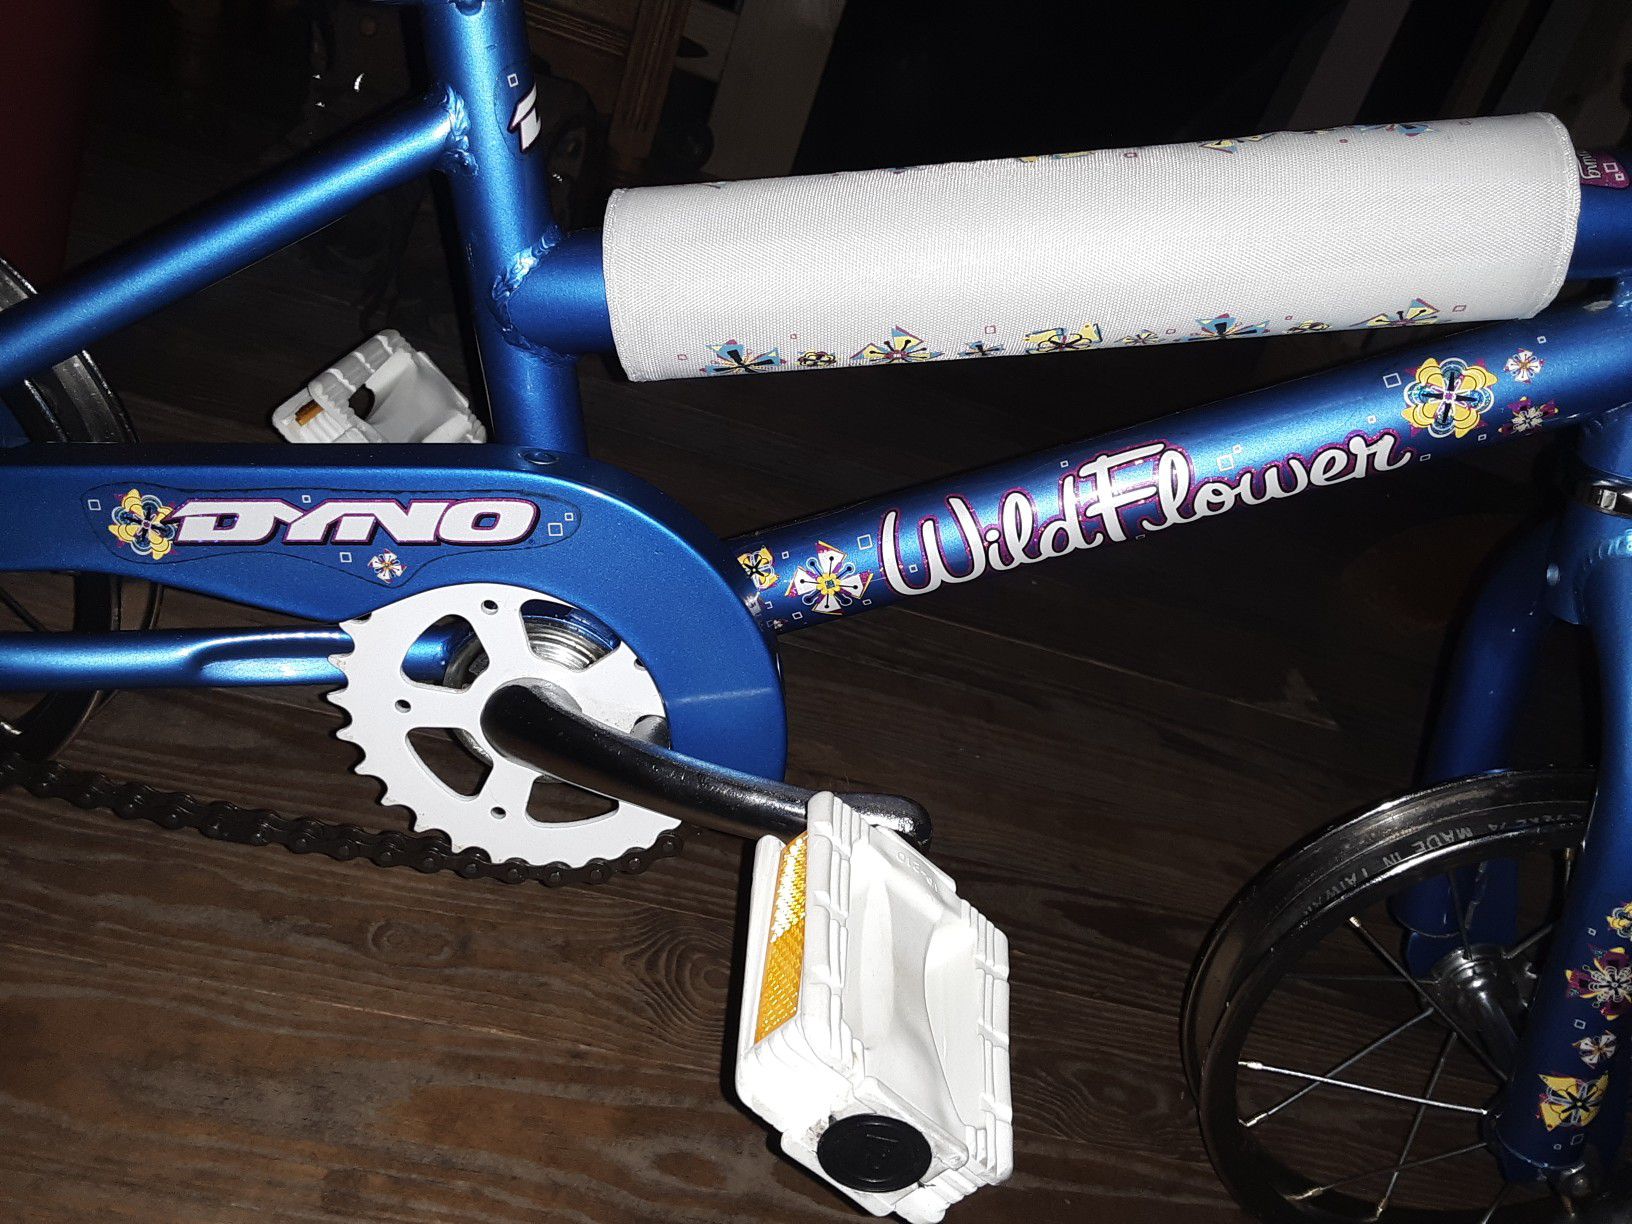 Dyno - Wildflower - Little girls bike